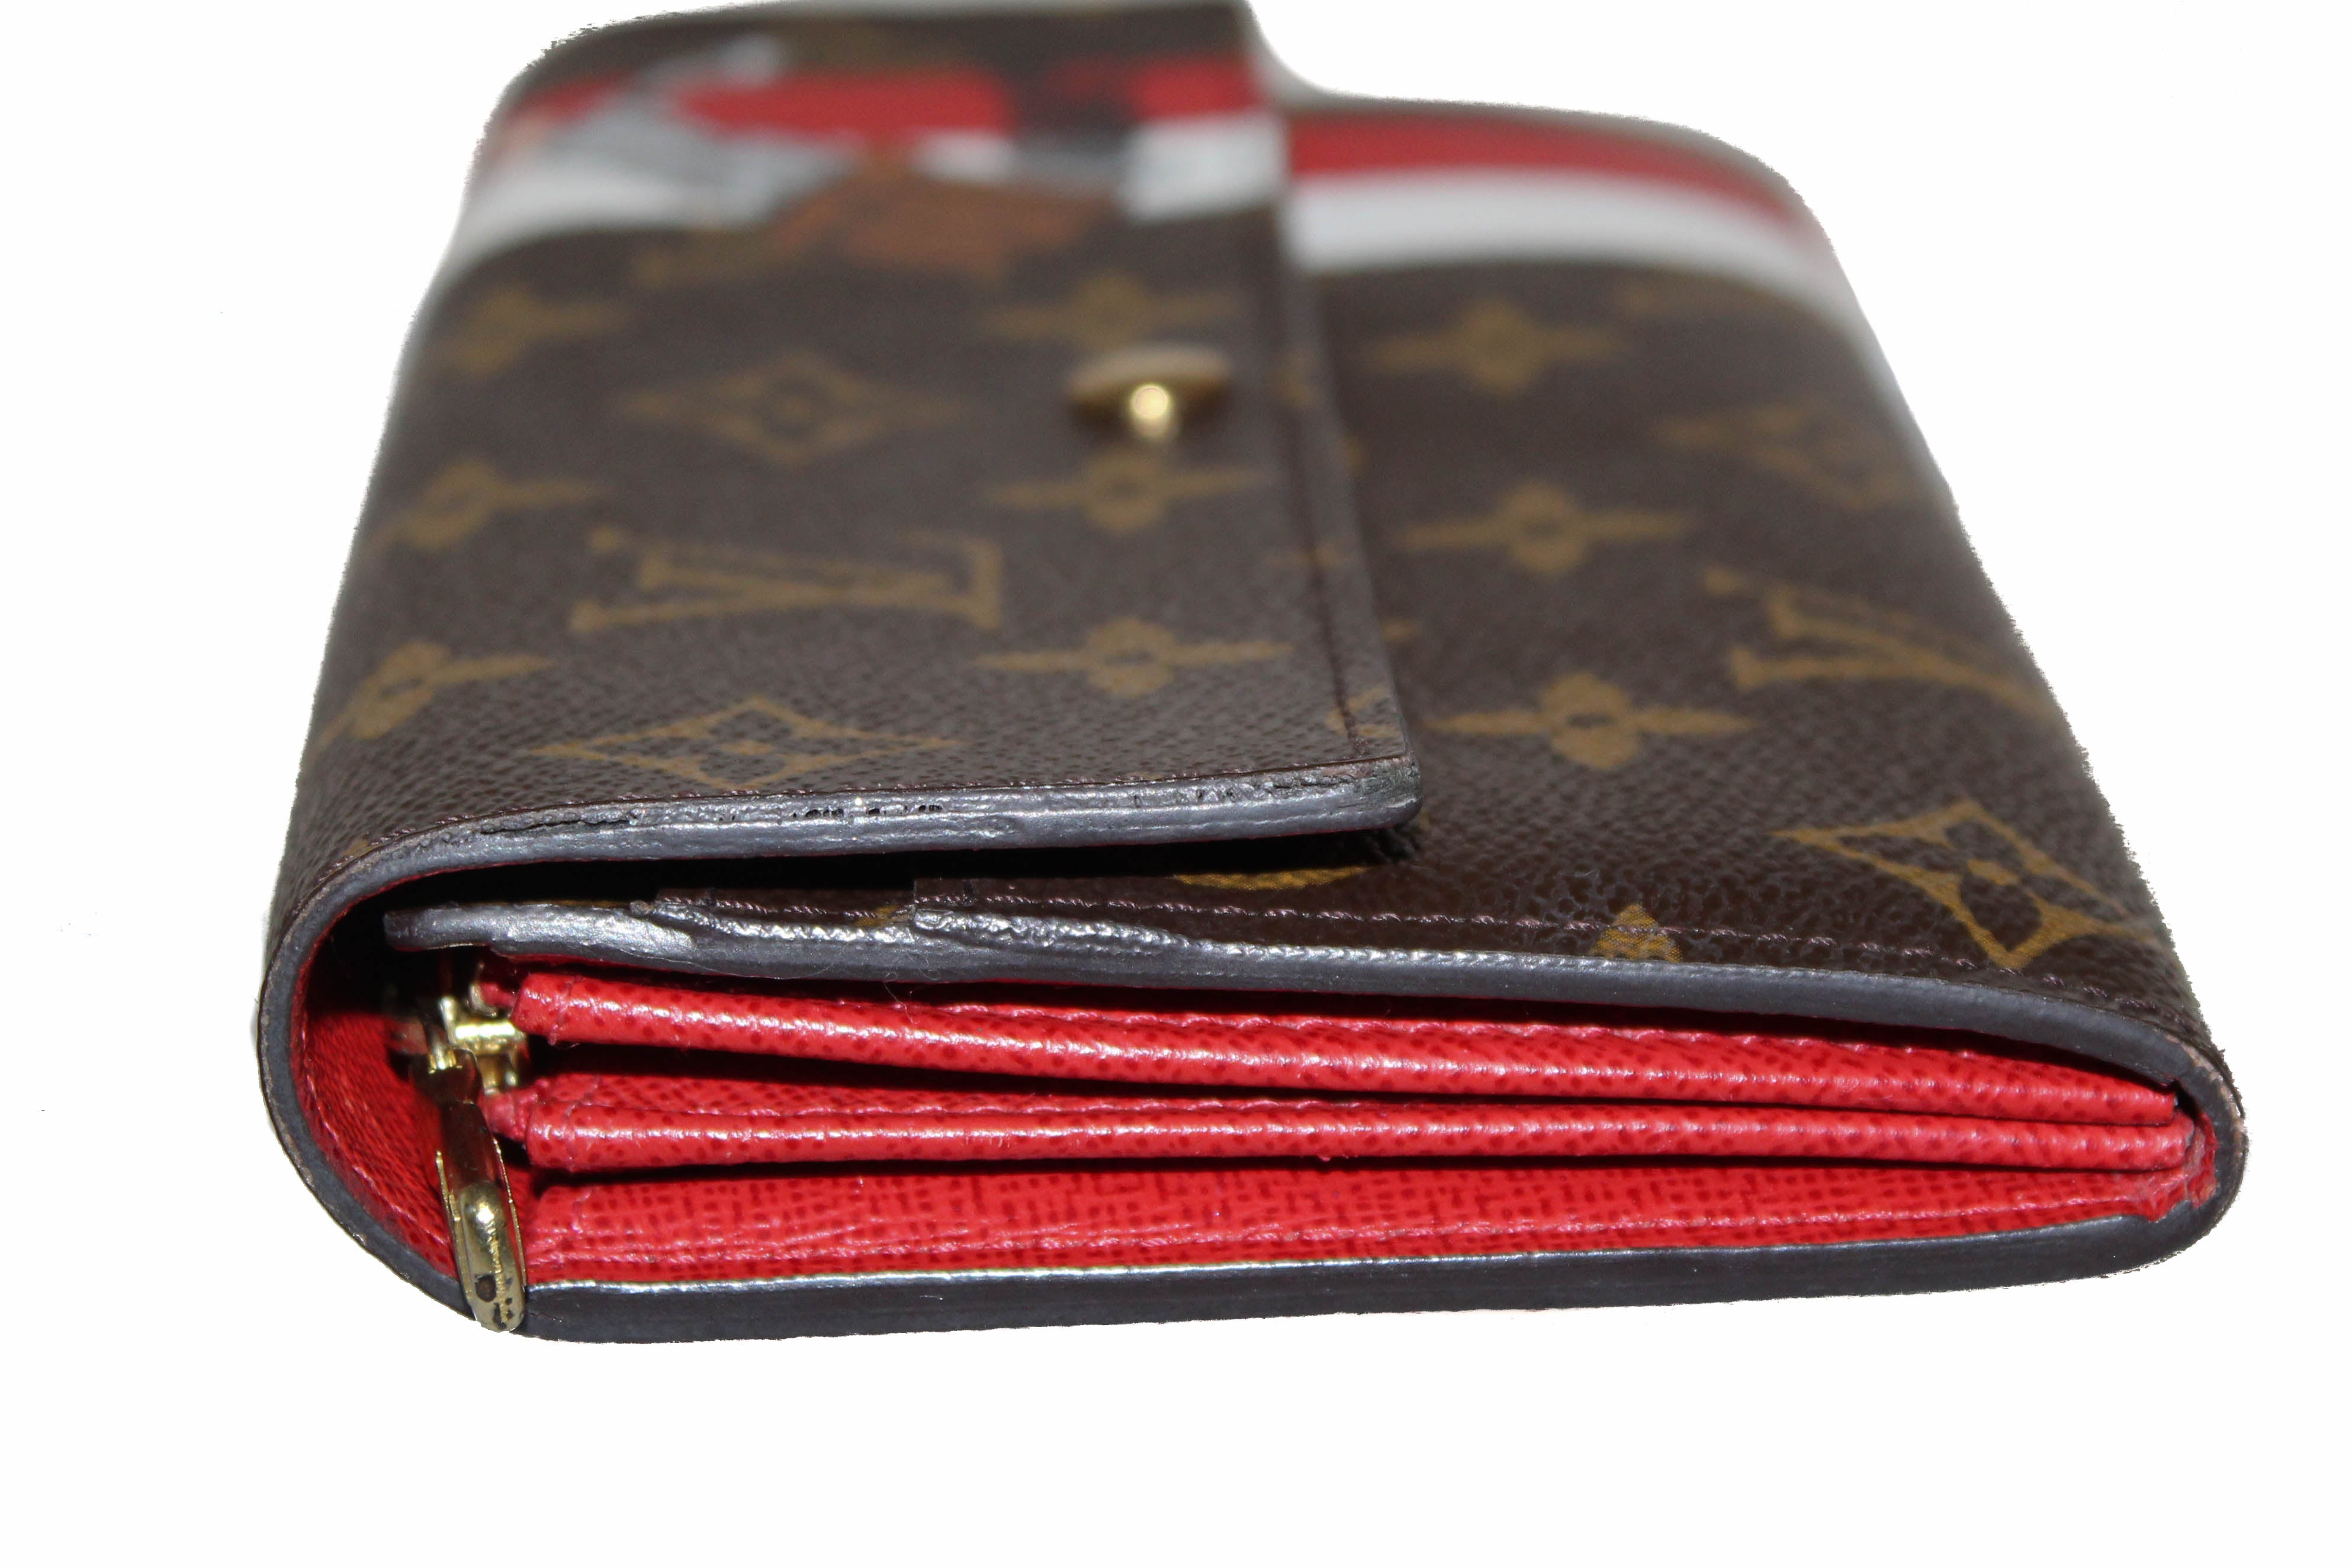 Shop Louis Vuitton PORTEFEUILLE SARAH Monogram Unisex Leather Folding Wallet  Logo Long Wallets (M82257) by viaconiglio